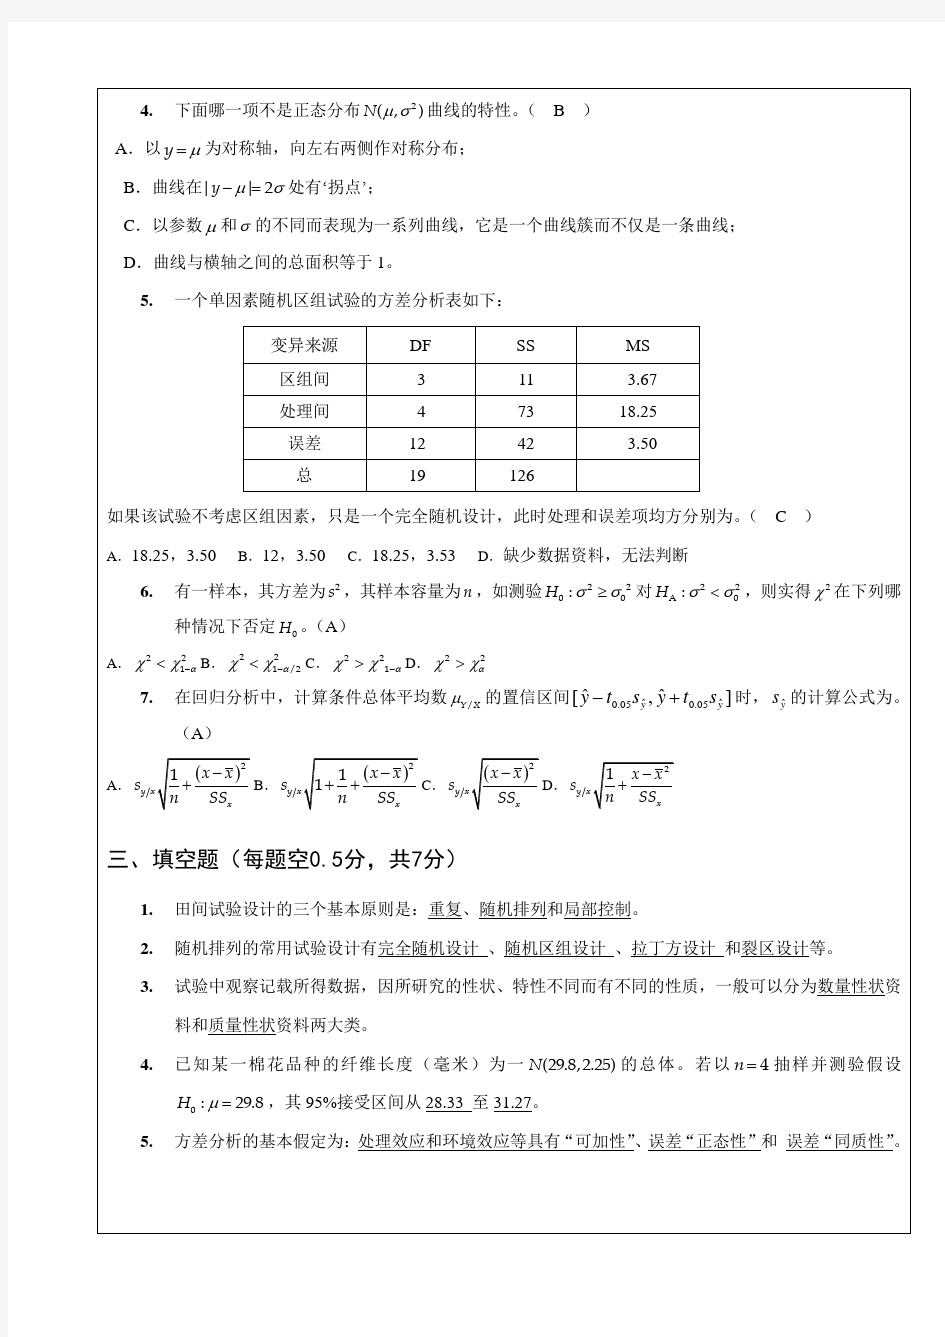 南京农业大学 试验统计方法试卷